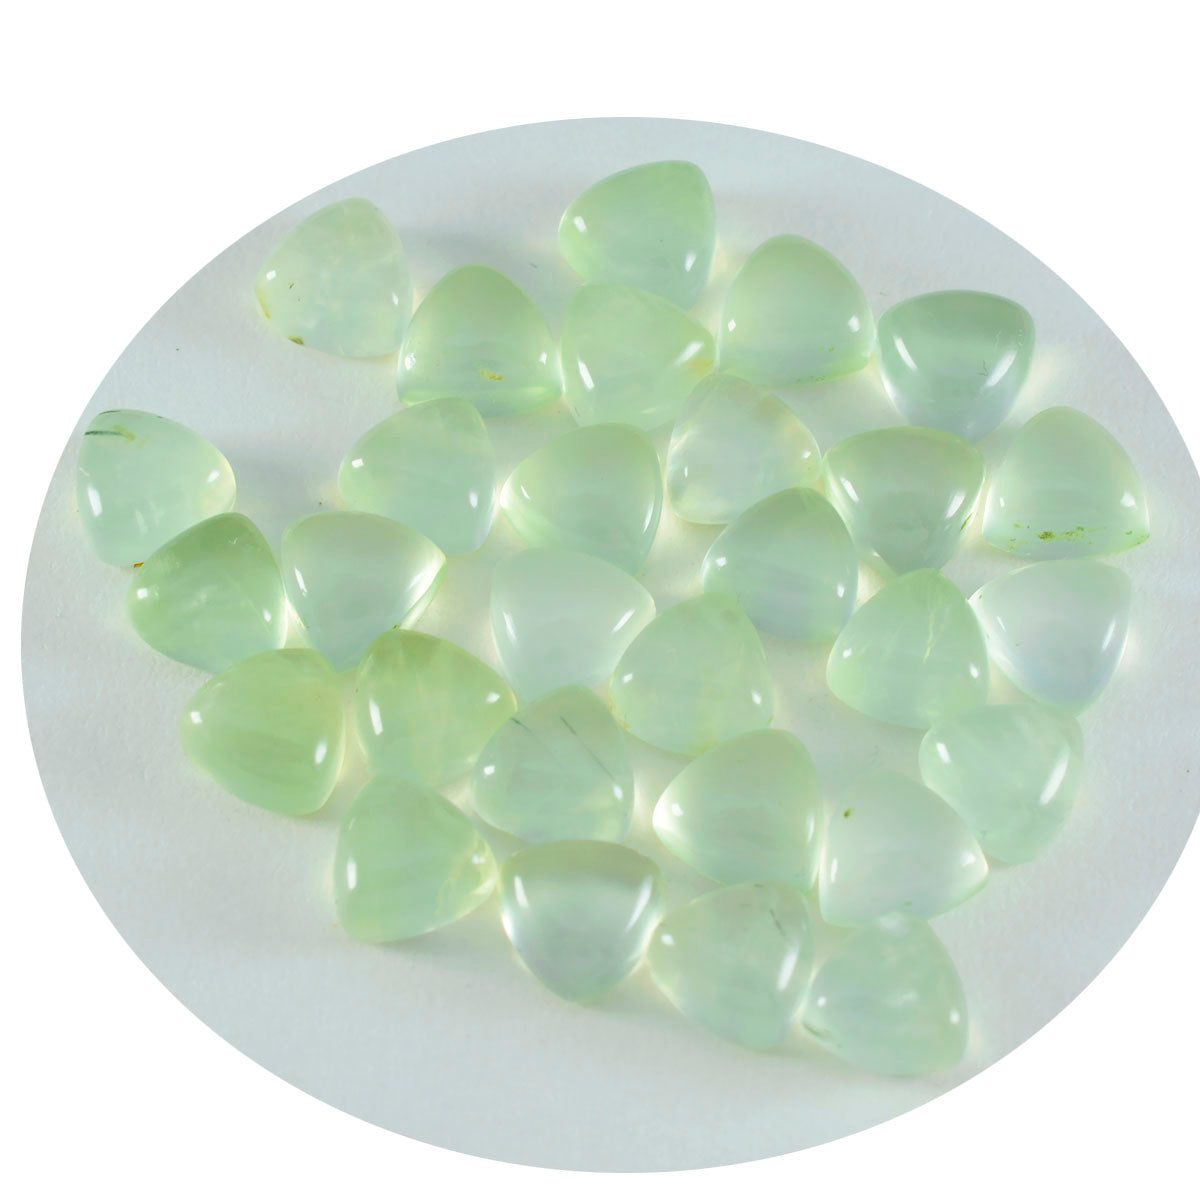 riyogems 1 шт. зеленый пренит кабошон 6x6 мм форма триллиона довольно качественный свободный драгоценный камень